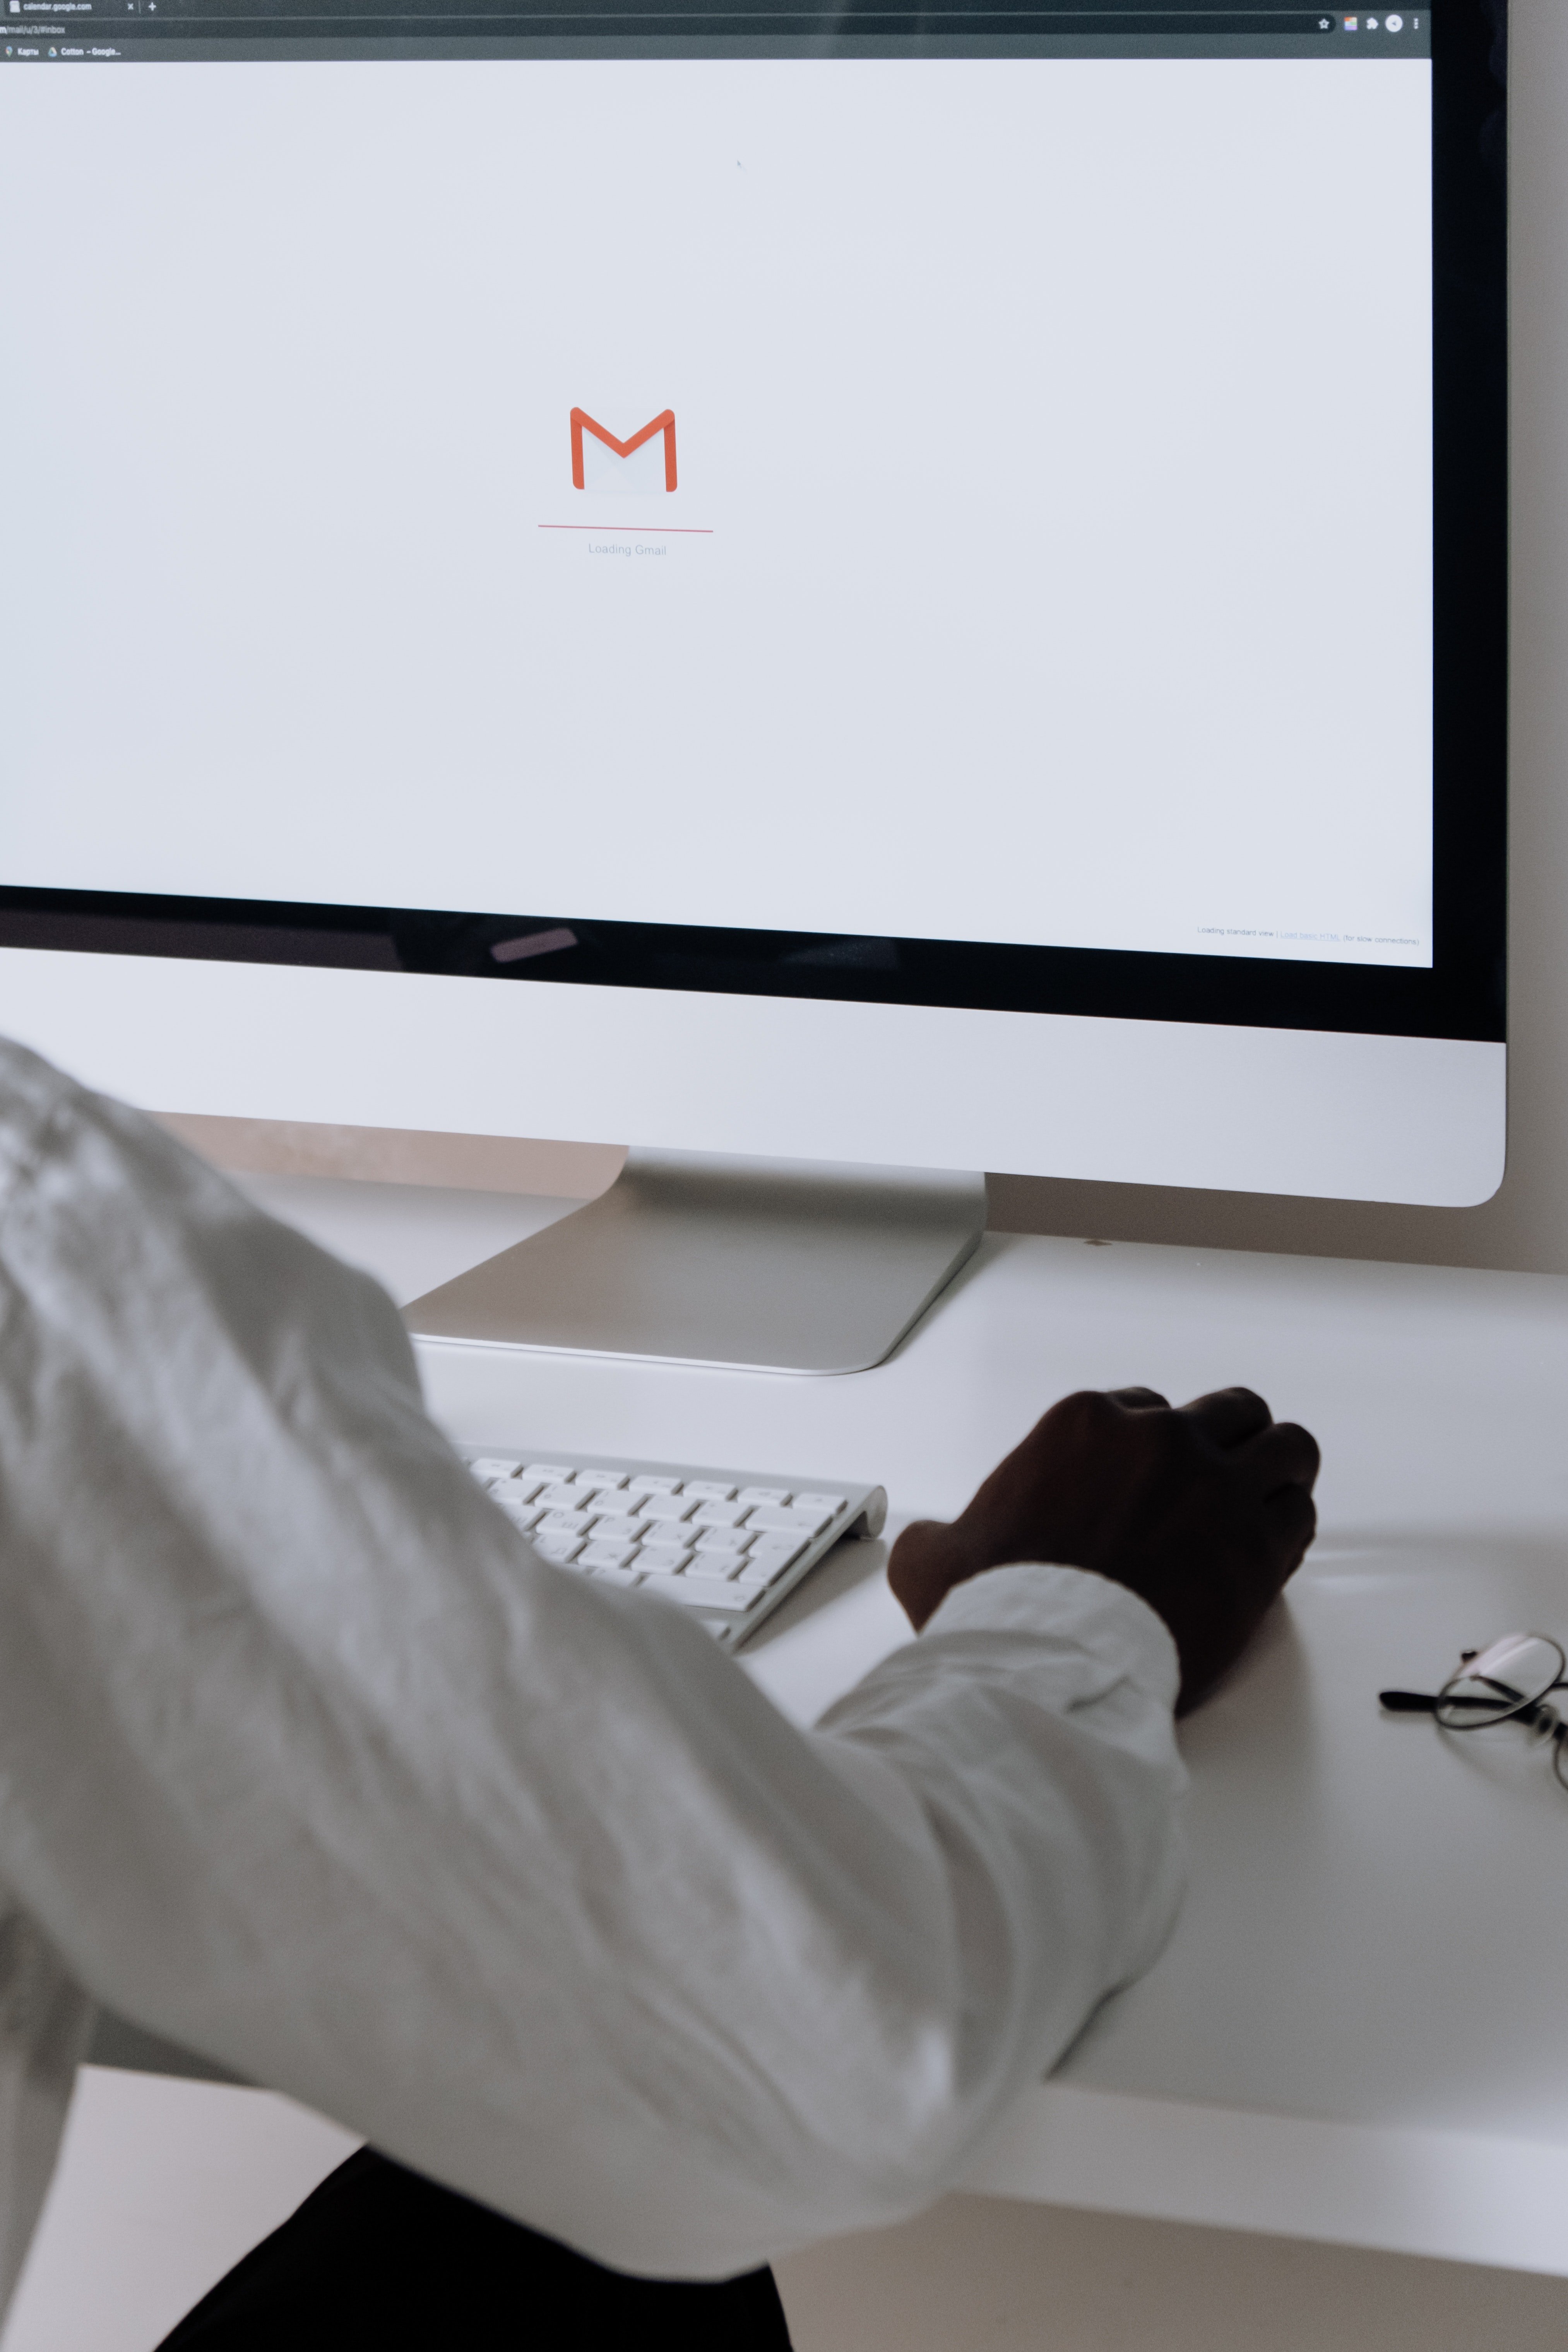 ¿Con qué frecuencia revisas tu correo electrónico?